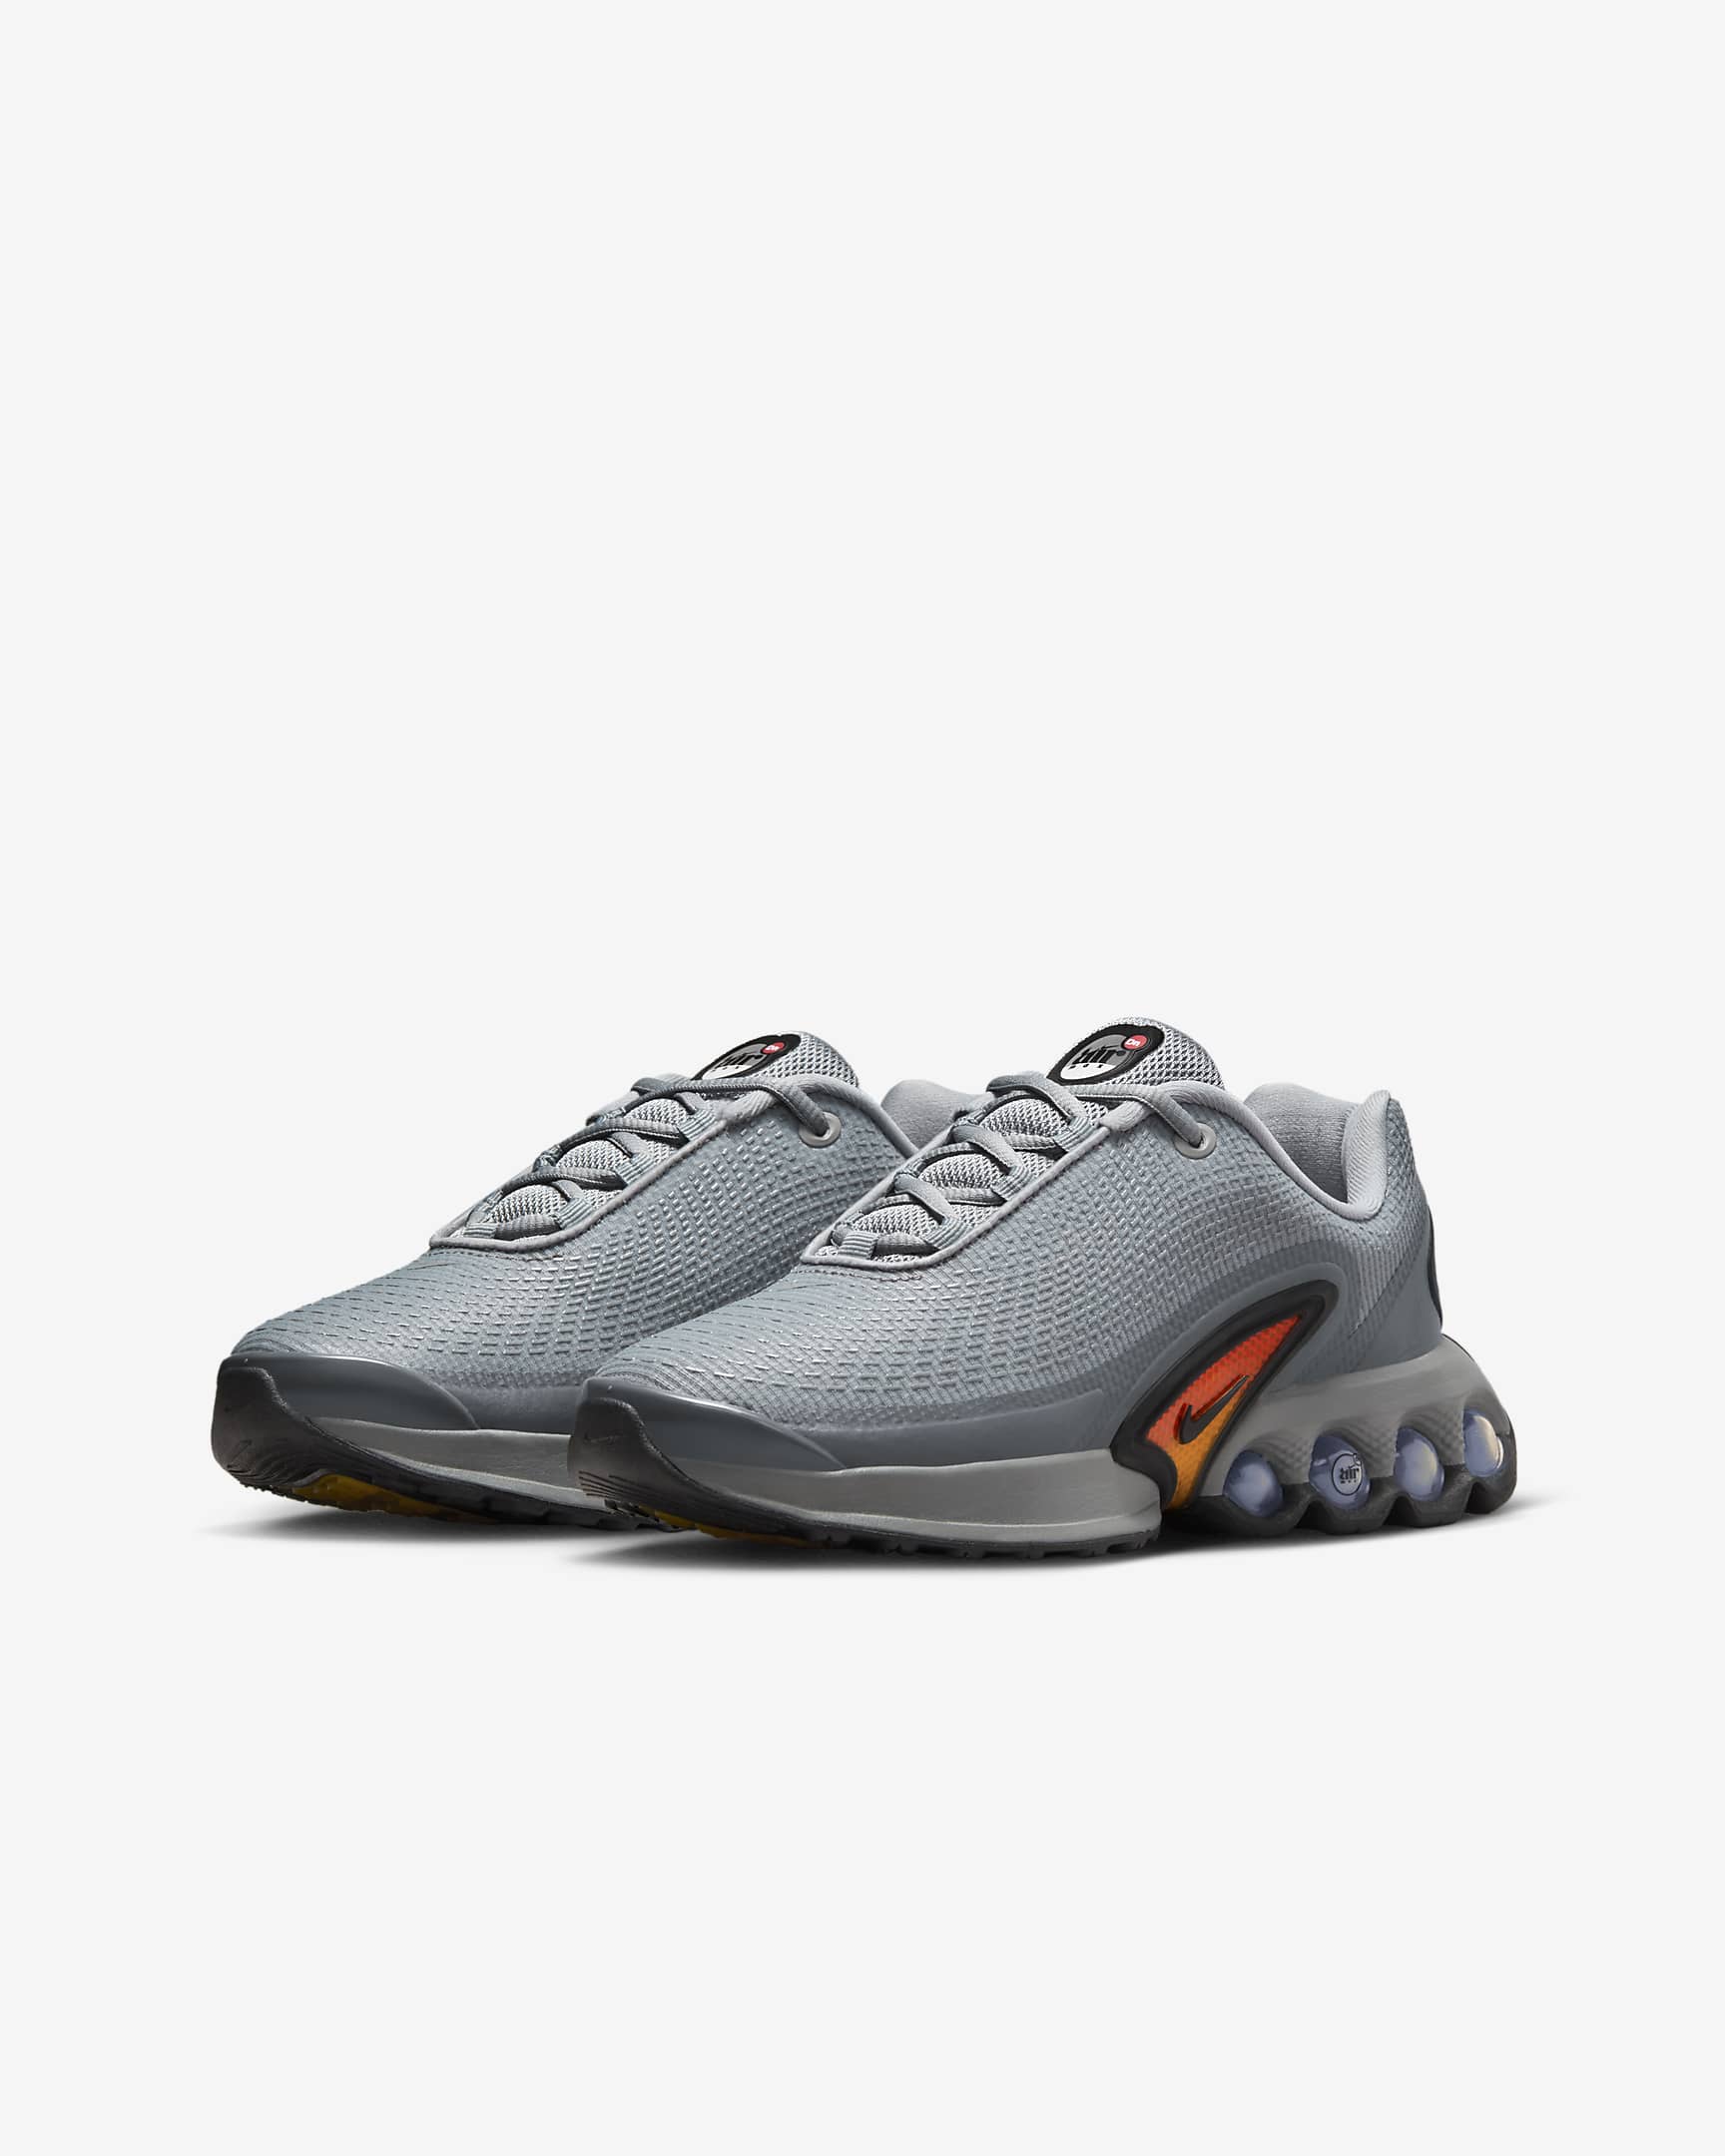 Nike Air Max Dn Schuhe für ältere Kinder - Particle Grey/Smoke Grey/Wolf Grey/Schwarz